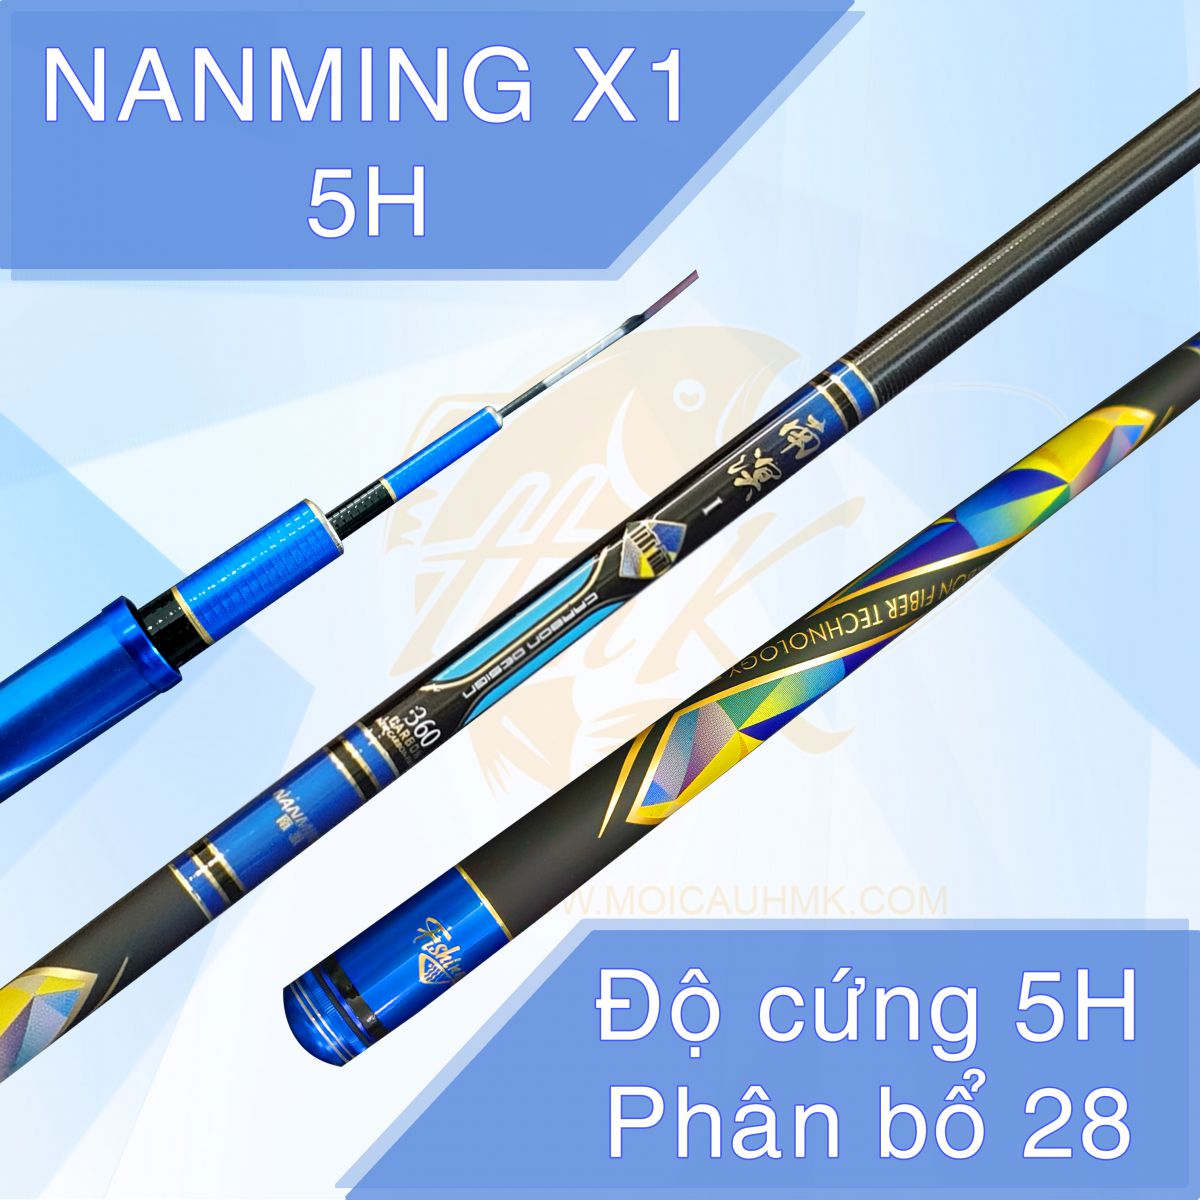 Cần câu tay Nanming X1 5H